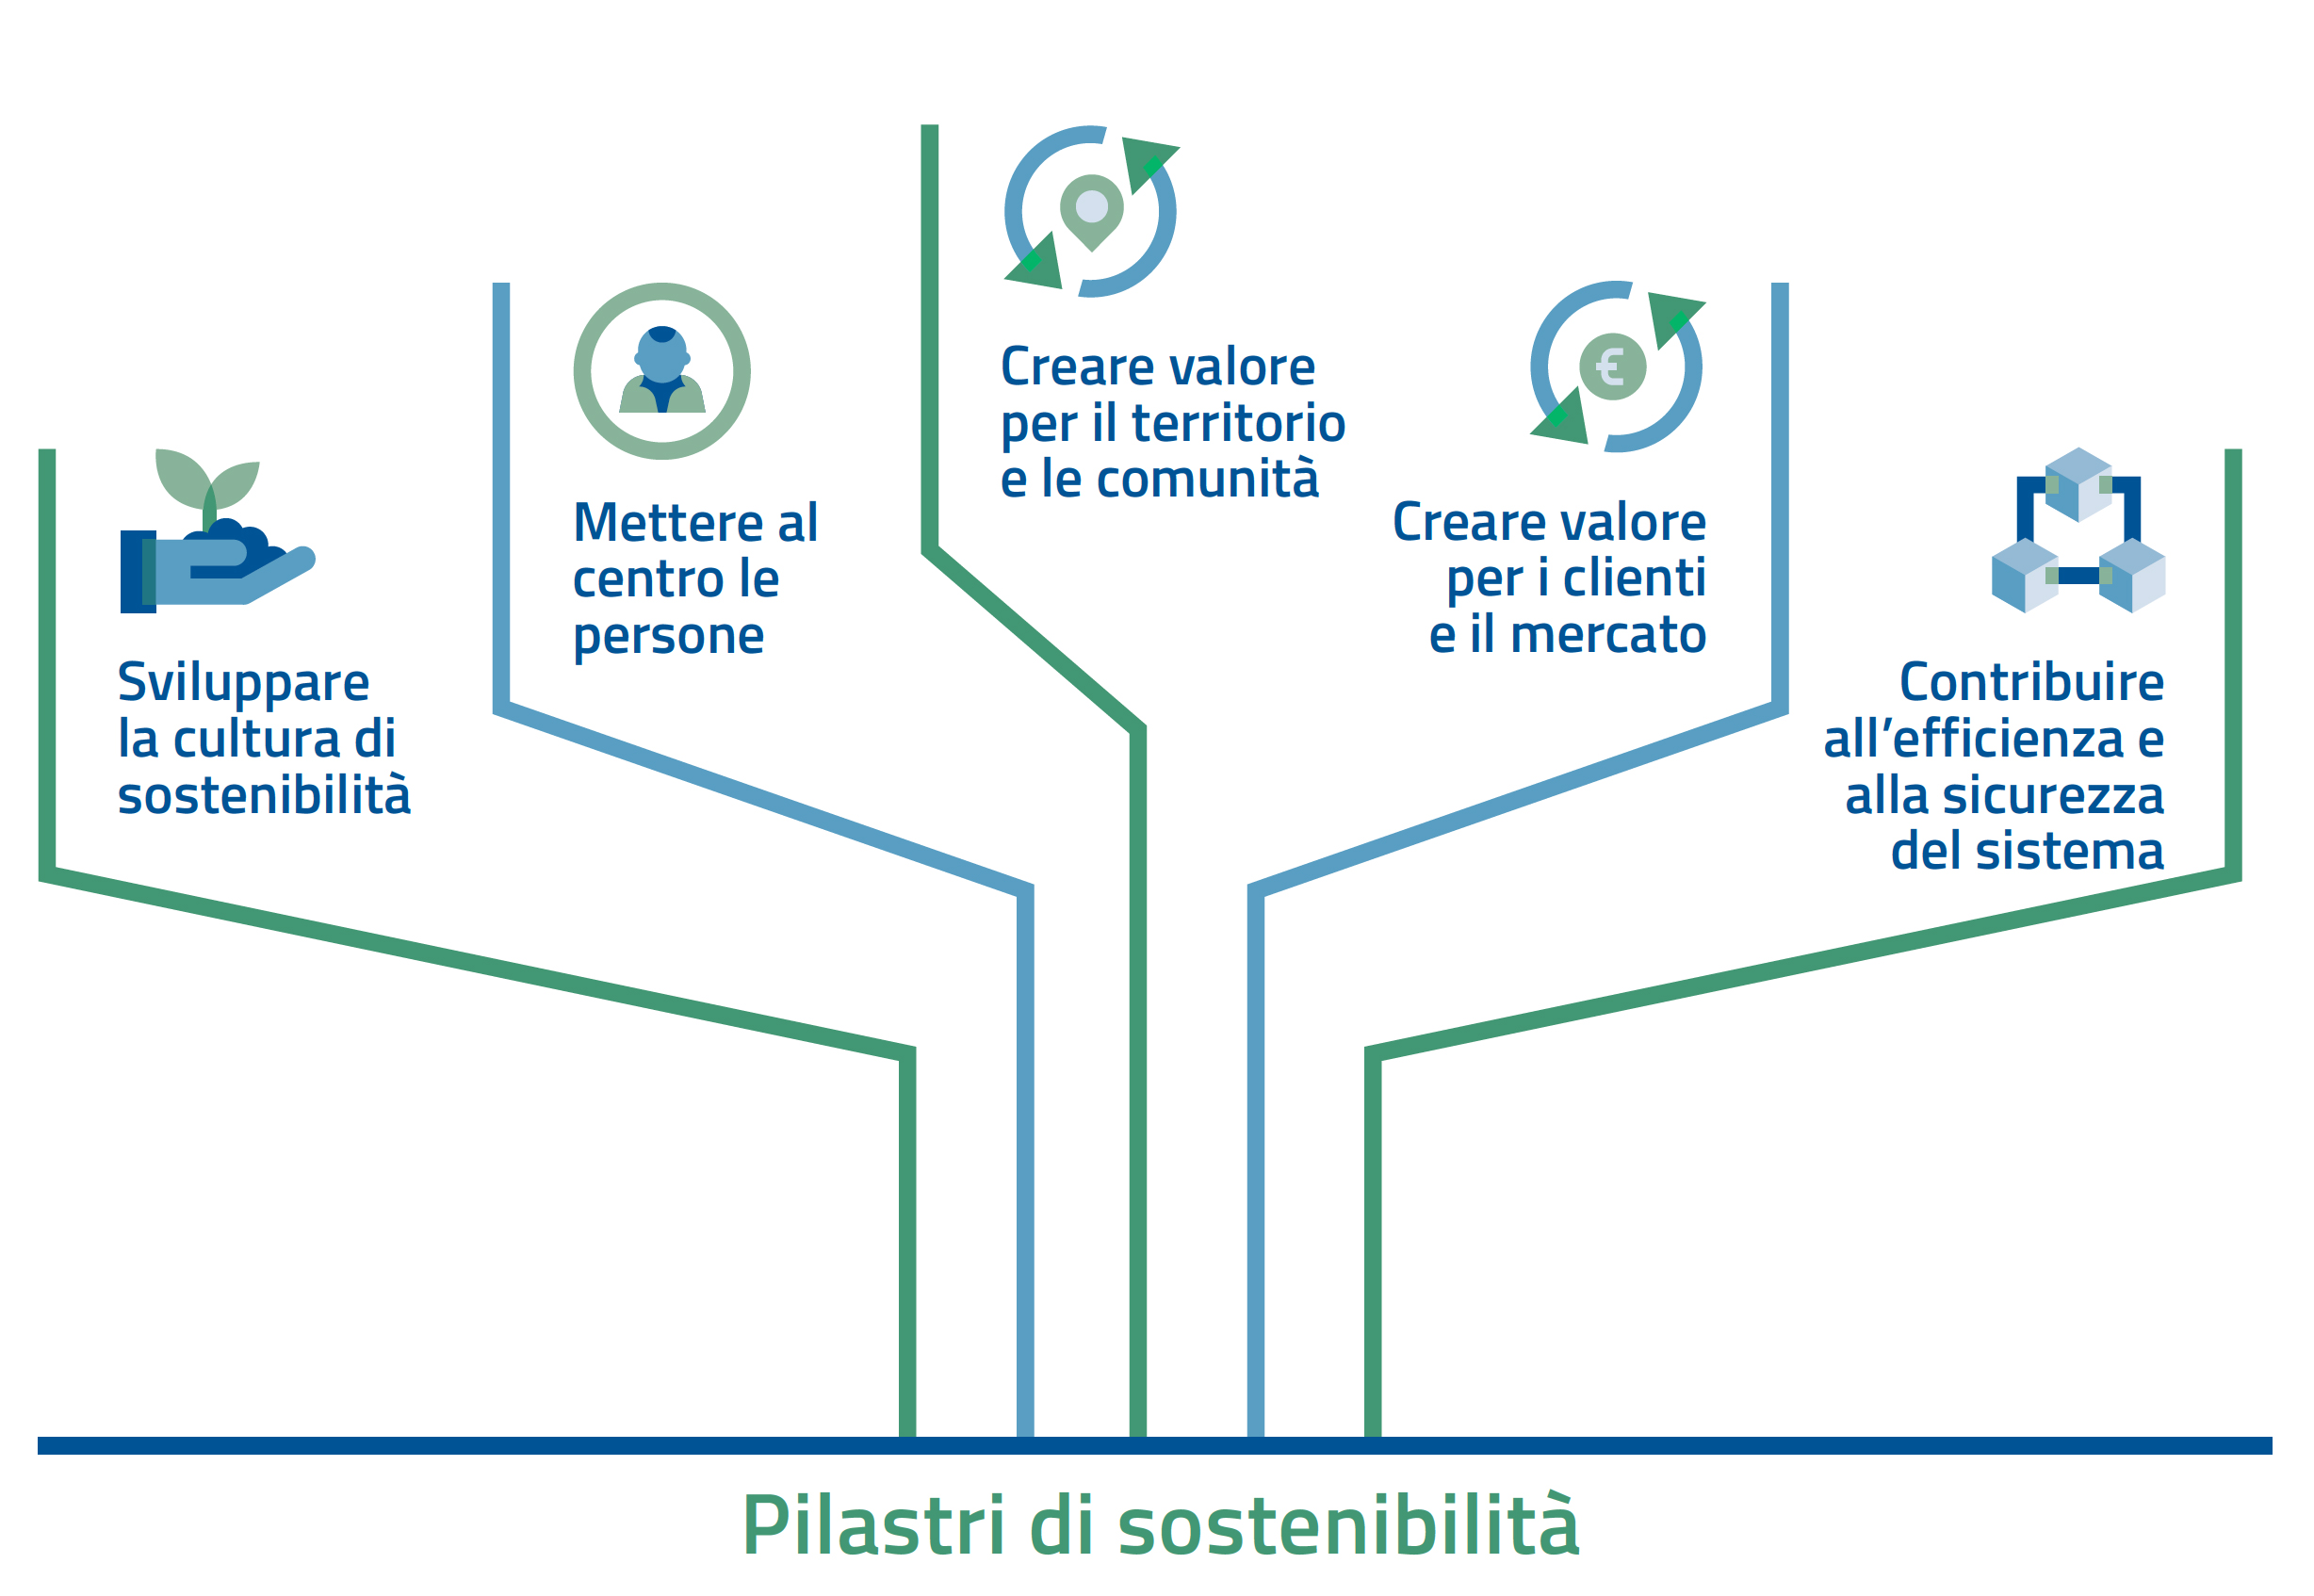 Pilastri di sostenibilità